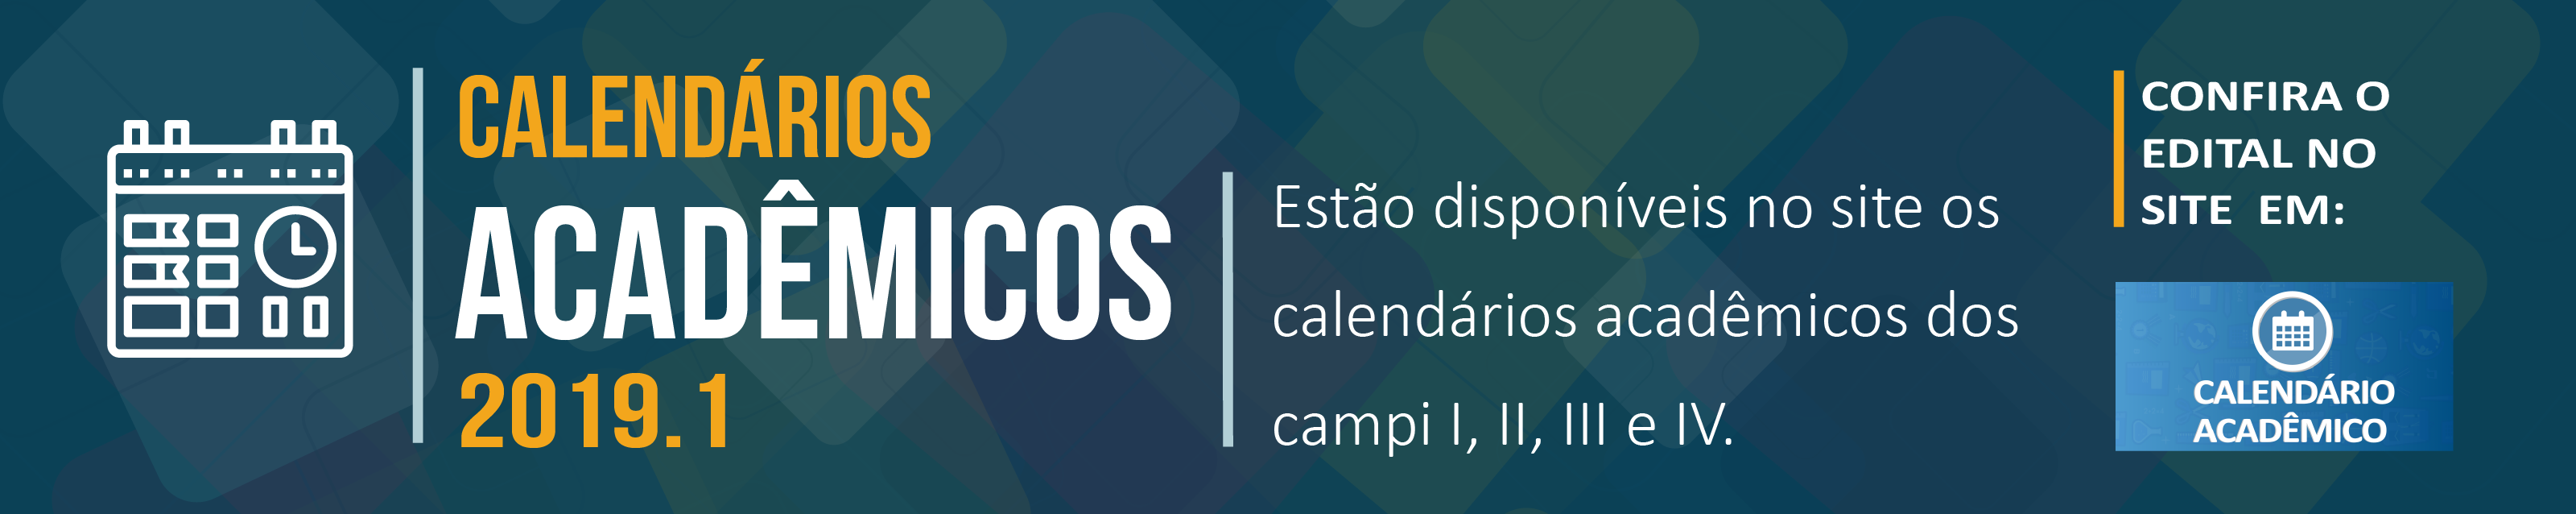 Calendários Acadêmicos 2019.1